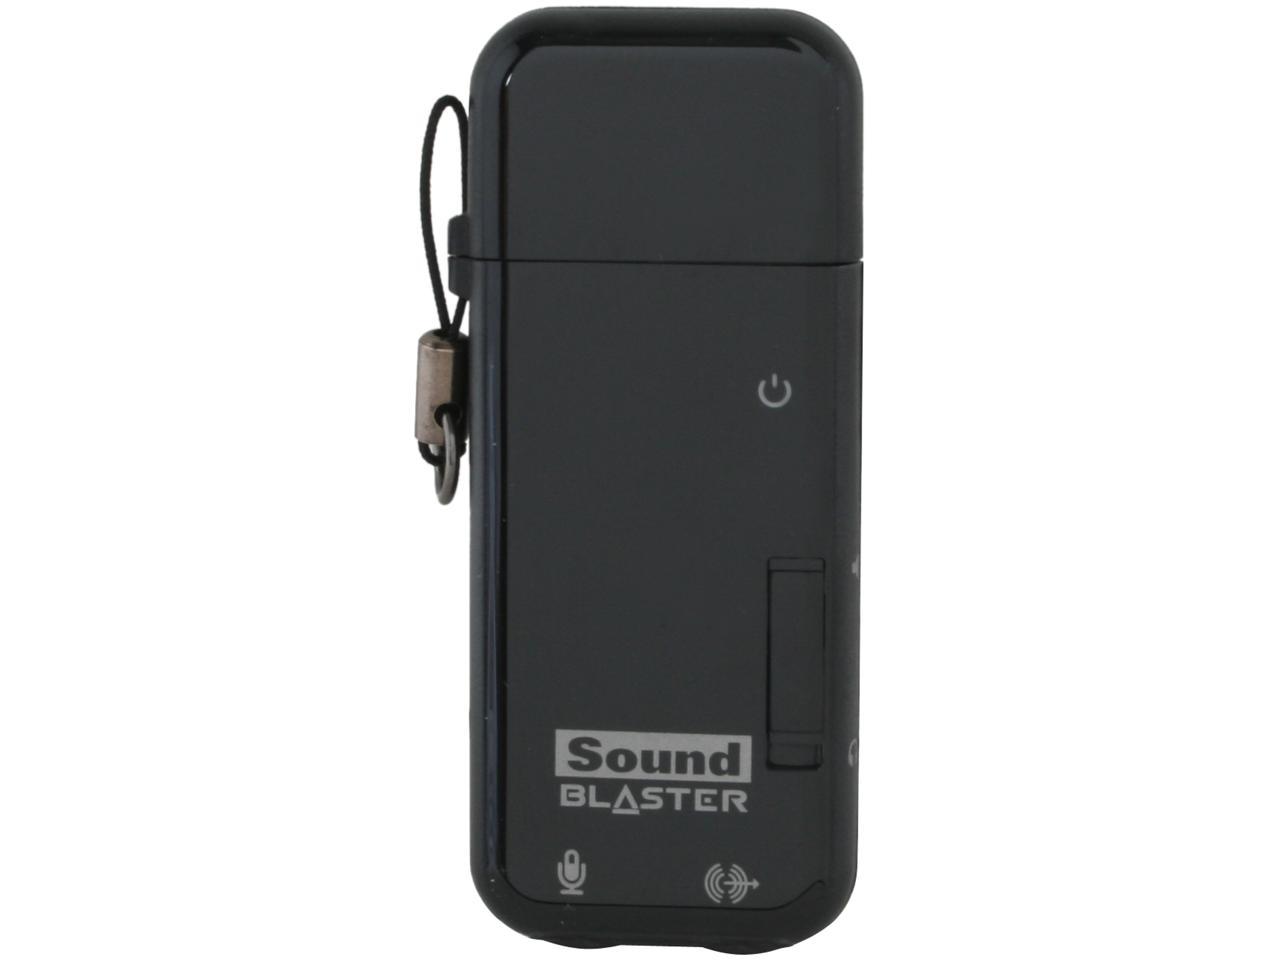 Creative Sound Blaster X Fi Go Pro Portable Usb Sound Card Newegg Com